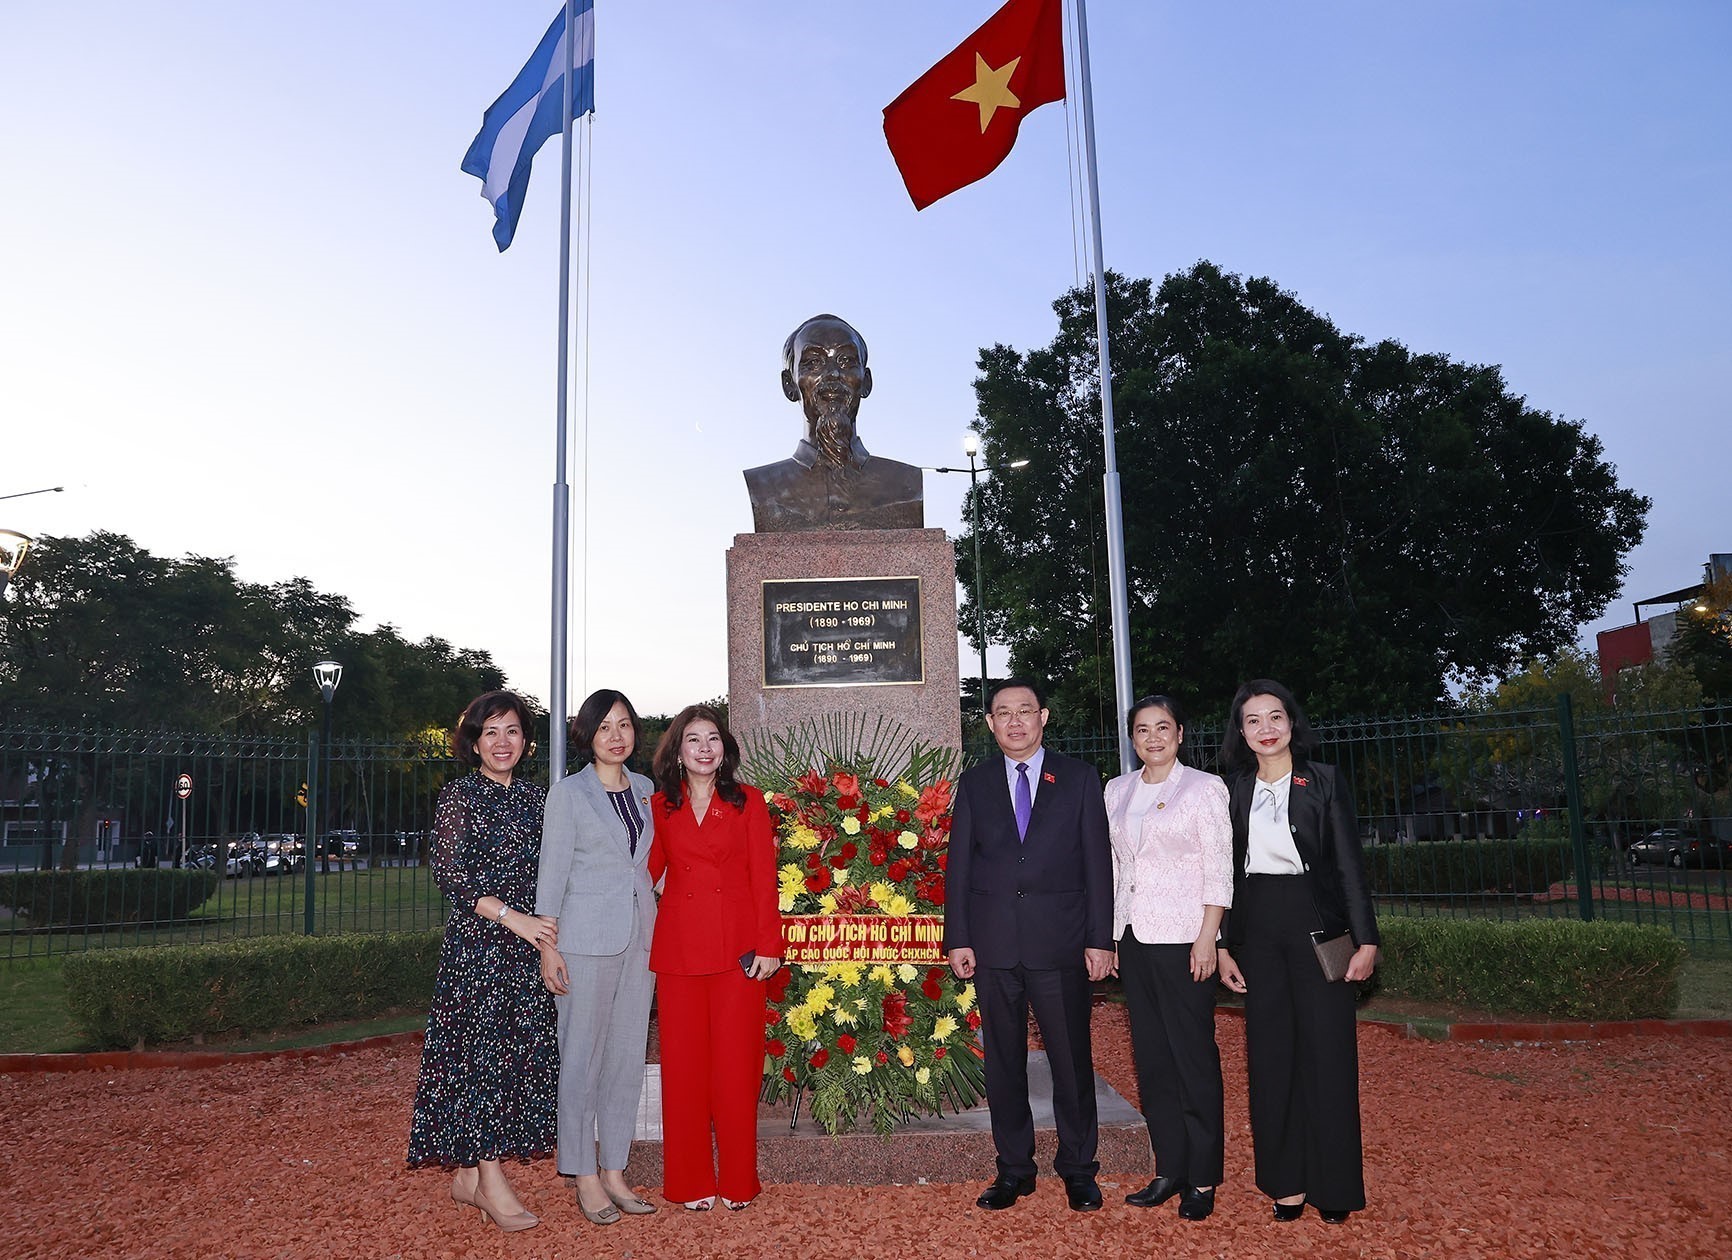 Chủ tịch Quốc hội đặt vòng hoa tại tượng đài Chủ tịch Hồ Chí Minh tại Argentina - Ảnh 4.